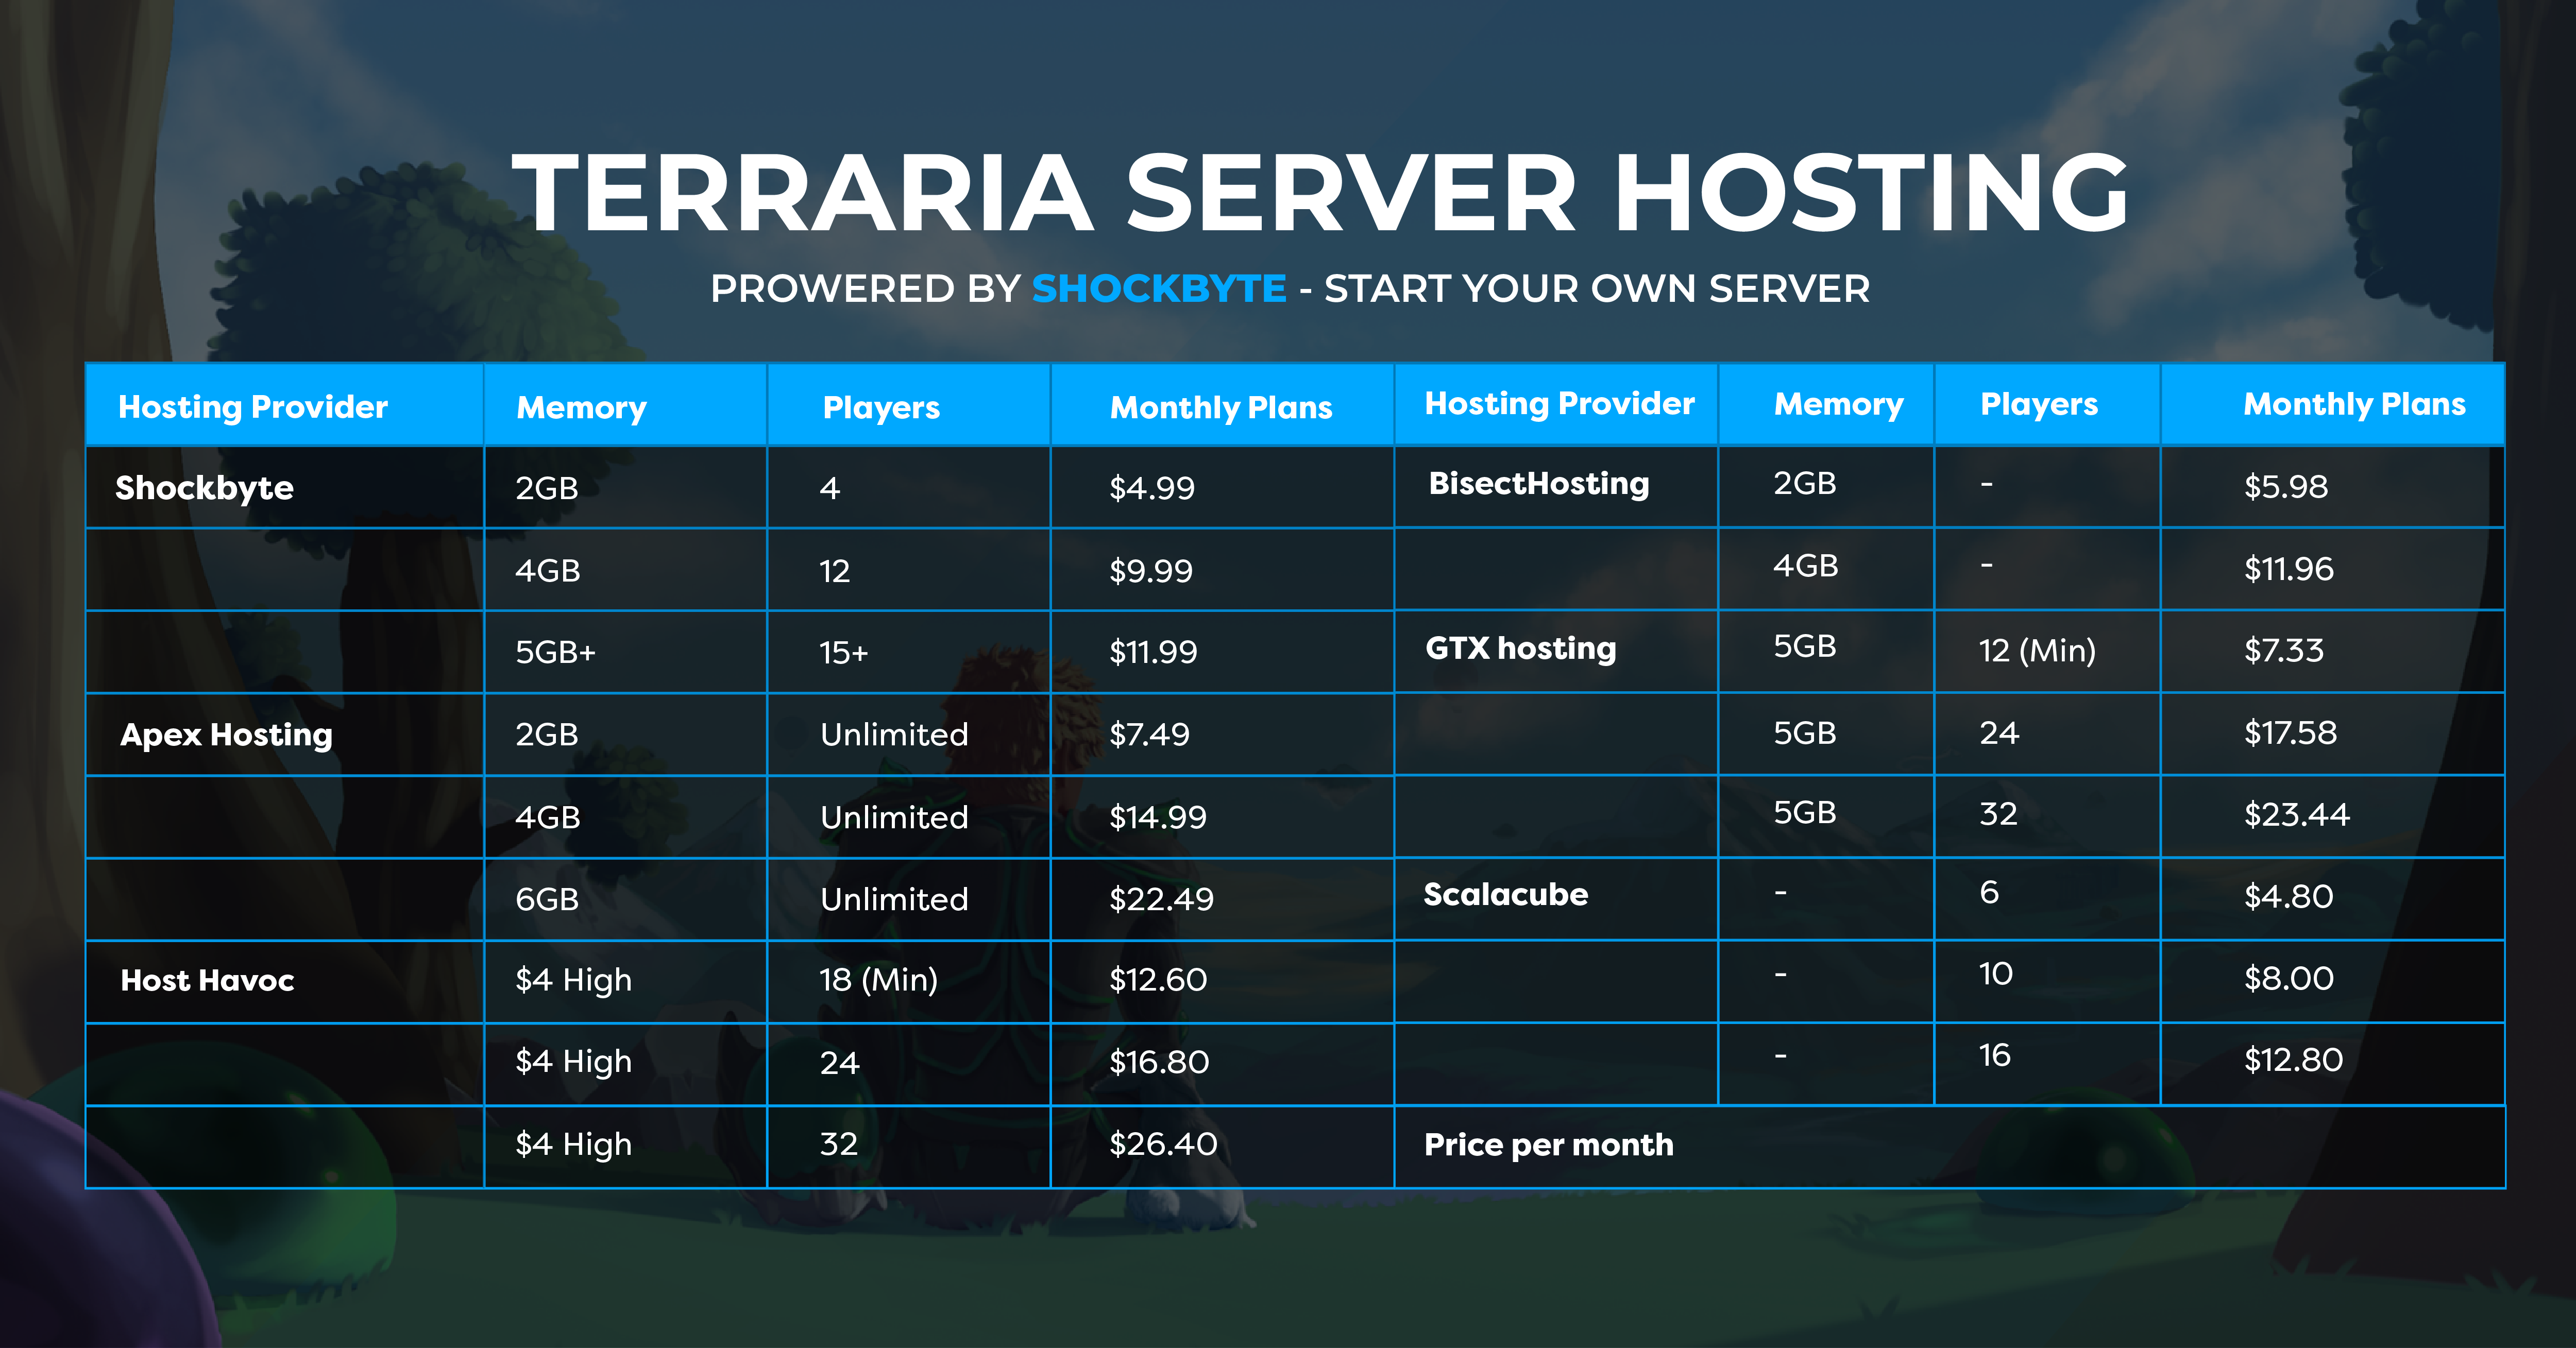 Terraria Server Hosting Review